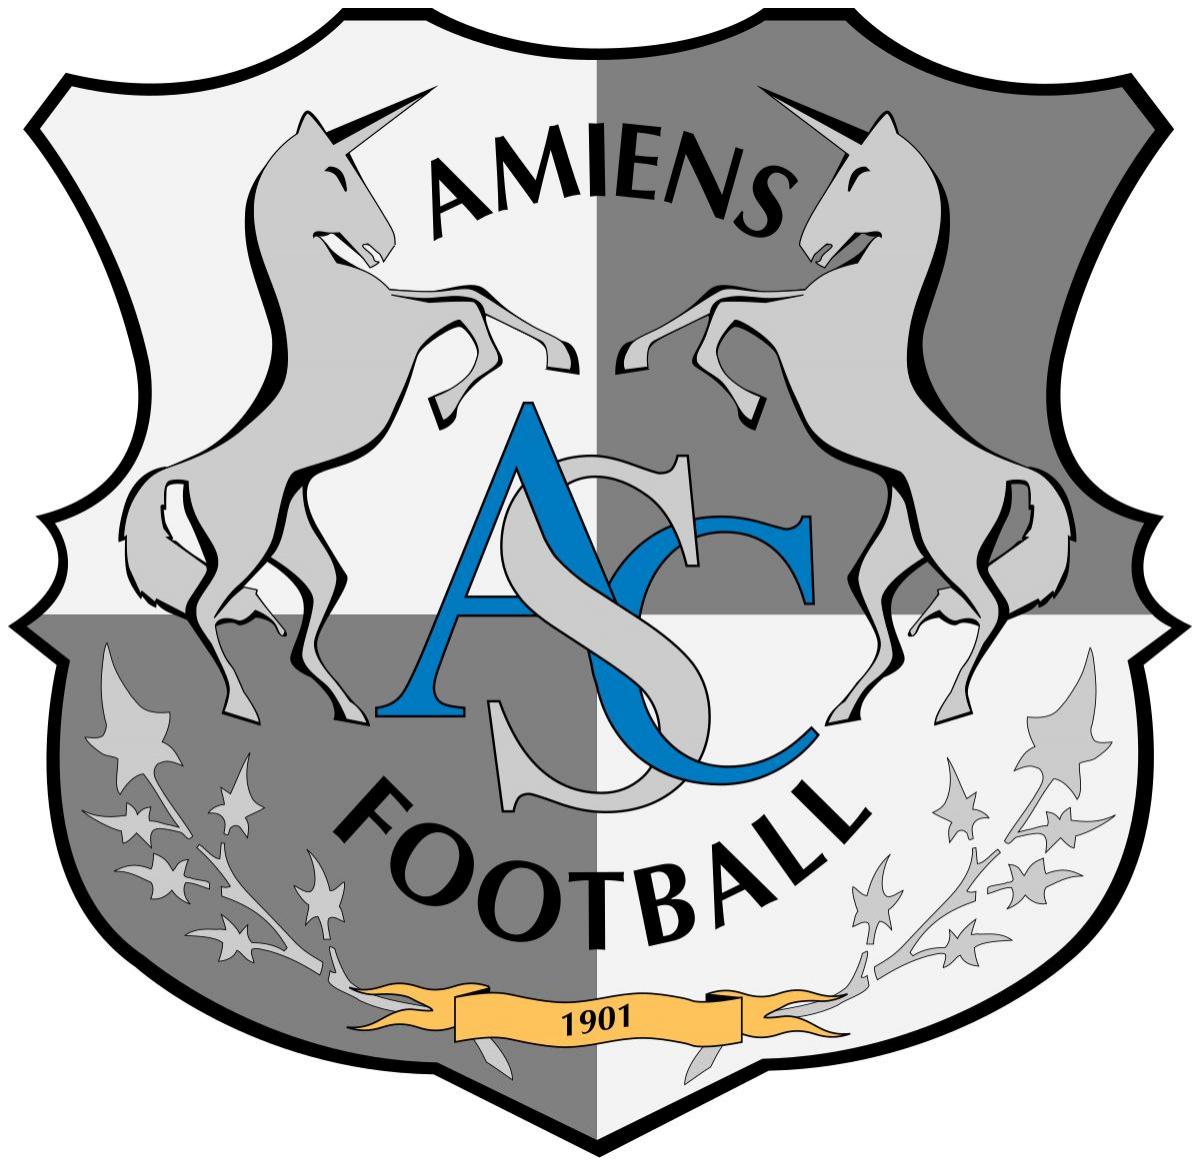 Preşedintele clubului Amiens, retrogradat din Ligue 1: O decizie nedreaptă, mă voi lupta cu toată puterea pentru a ne apăra drepturile